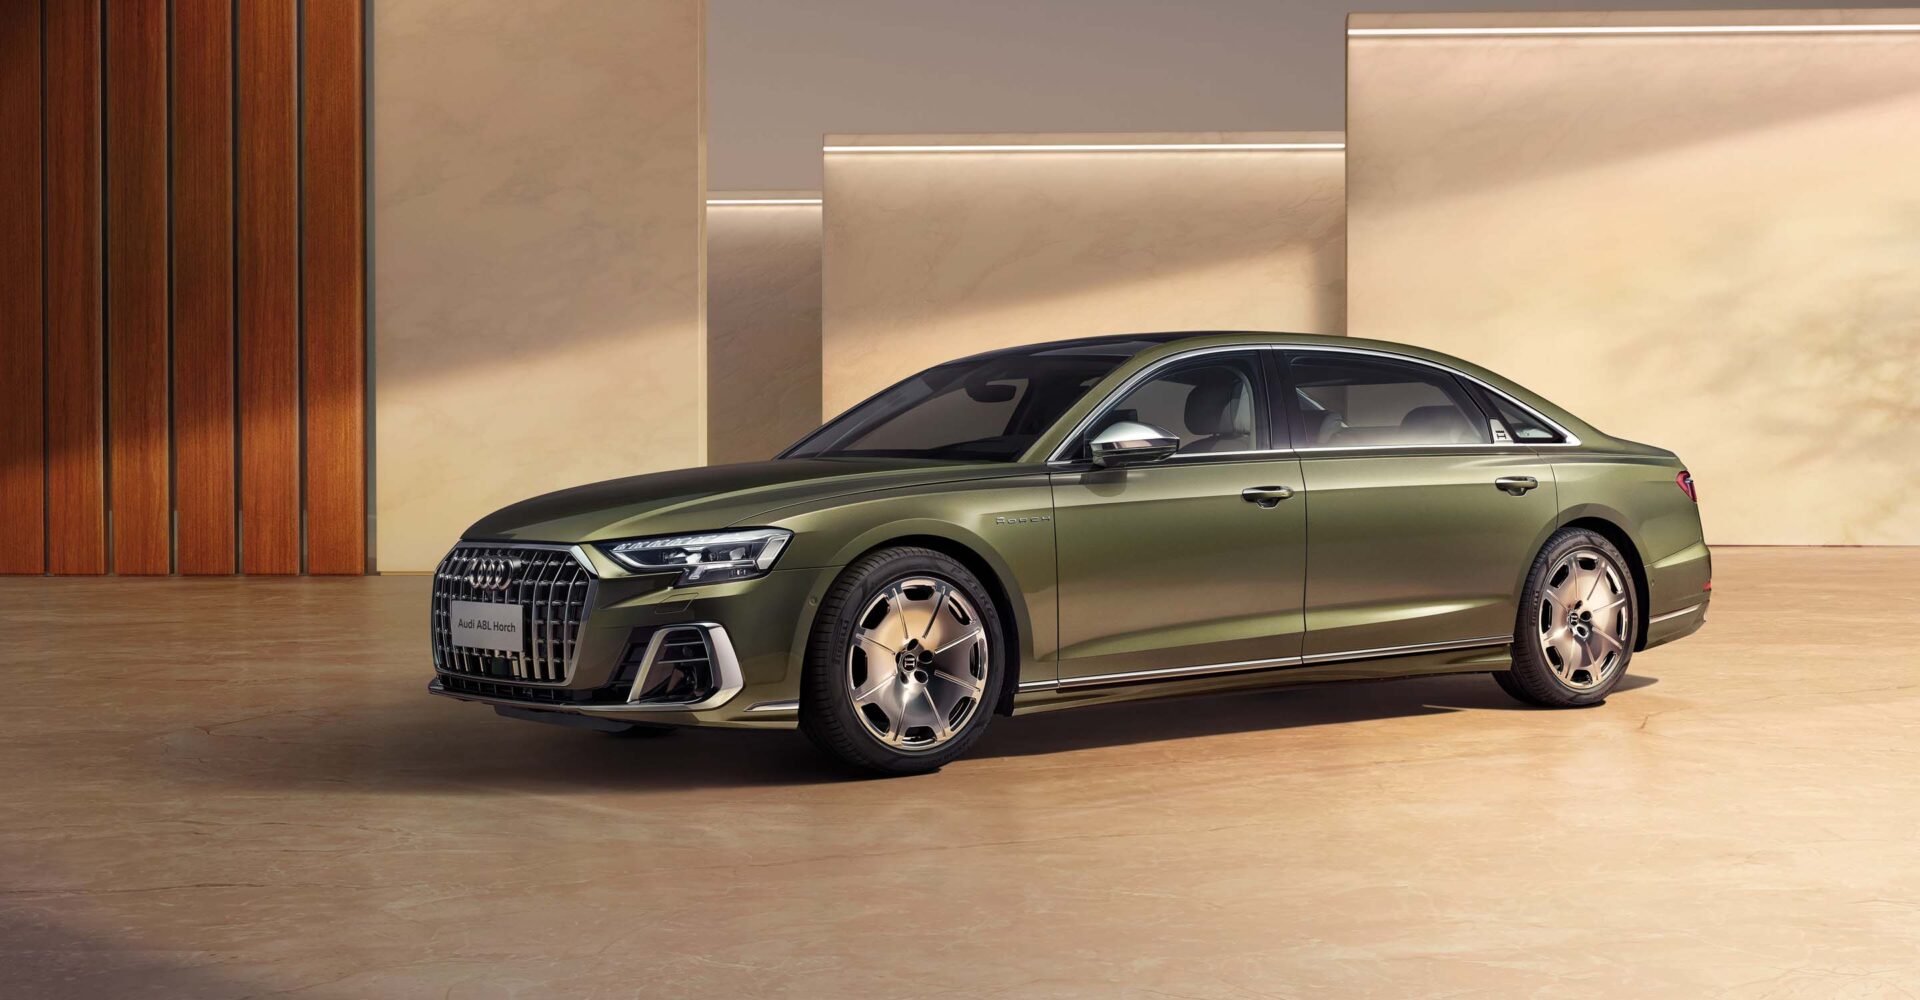 Audi добавила двигатель V8 седану A8L Horch: цены удивили